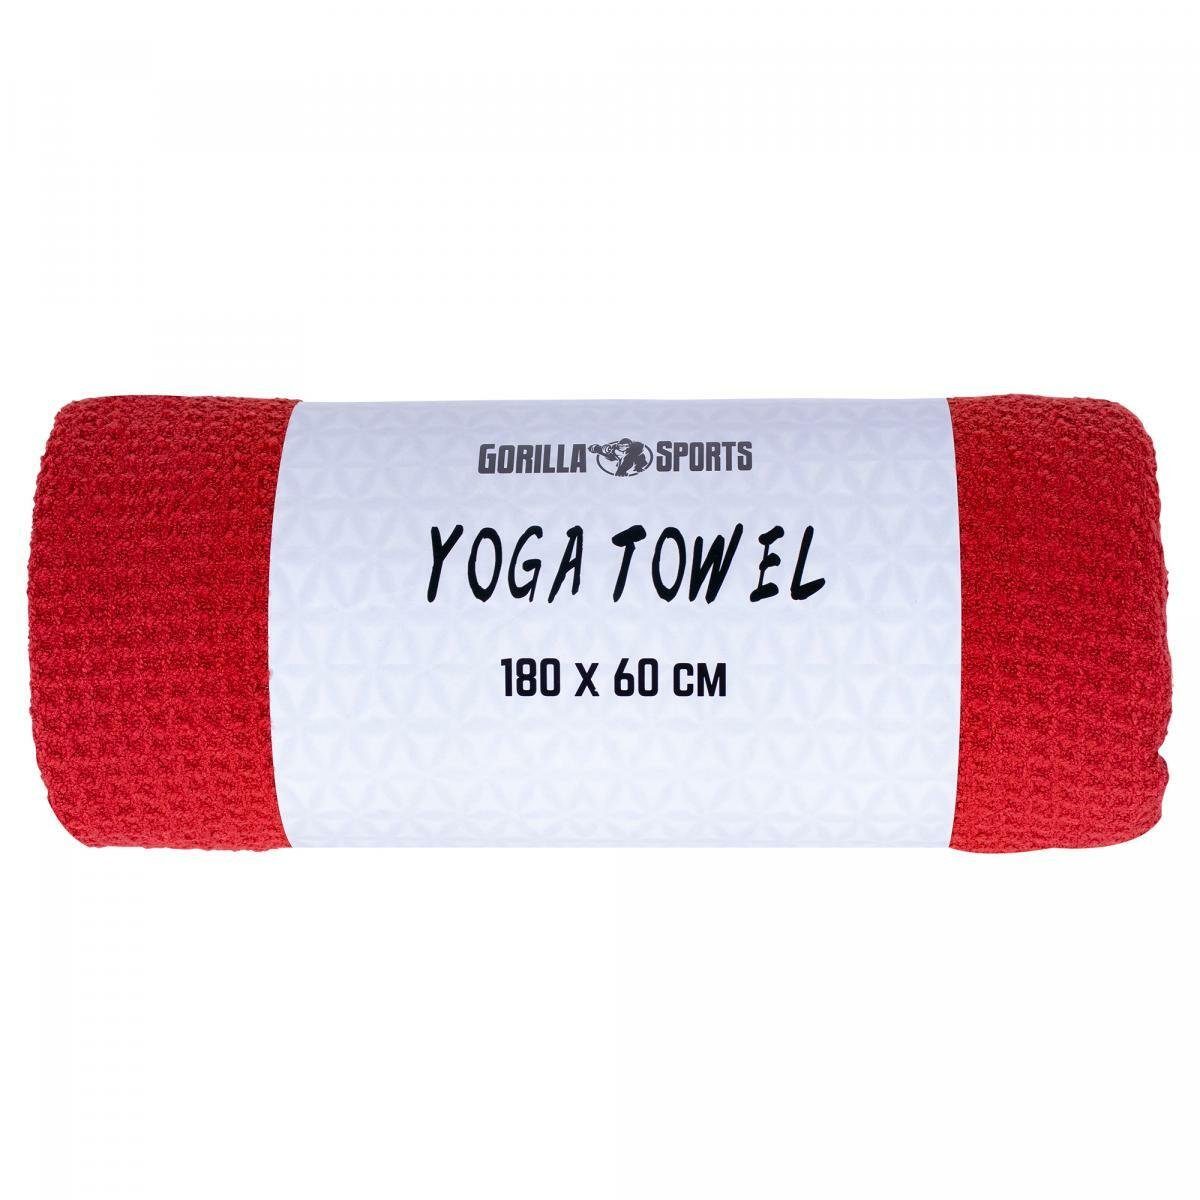 Yoga Saugfähig, Sporthandtuch GORILLA Towel, Schnelltrocknend Strandtuch, 180x60cm, SPORTS Handtuch Dunkelrot